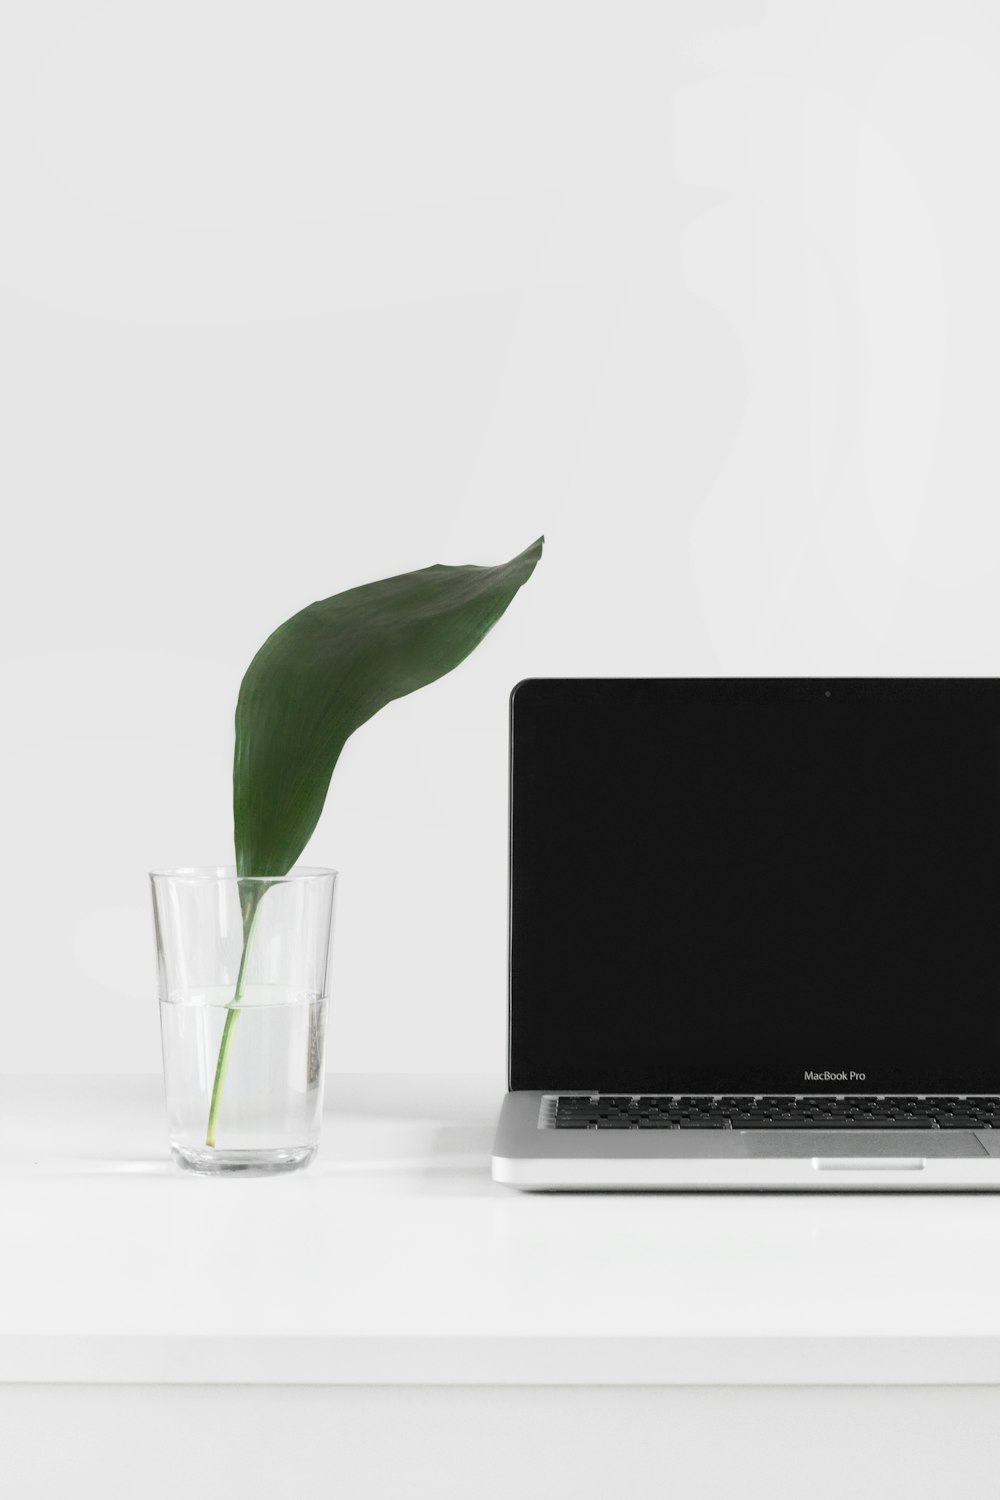 MacBook Pro ao lado da planta no vaso